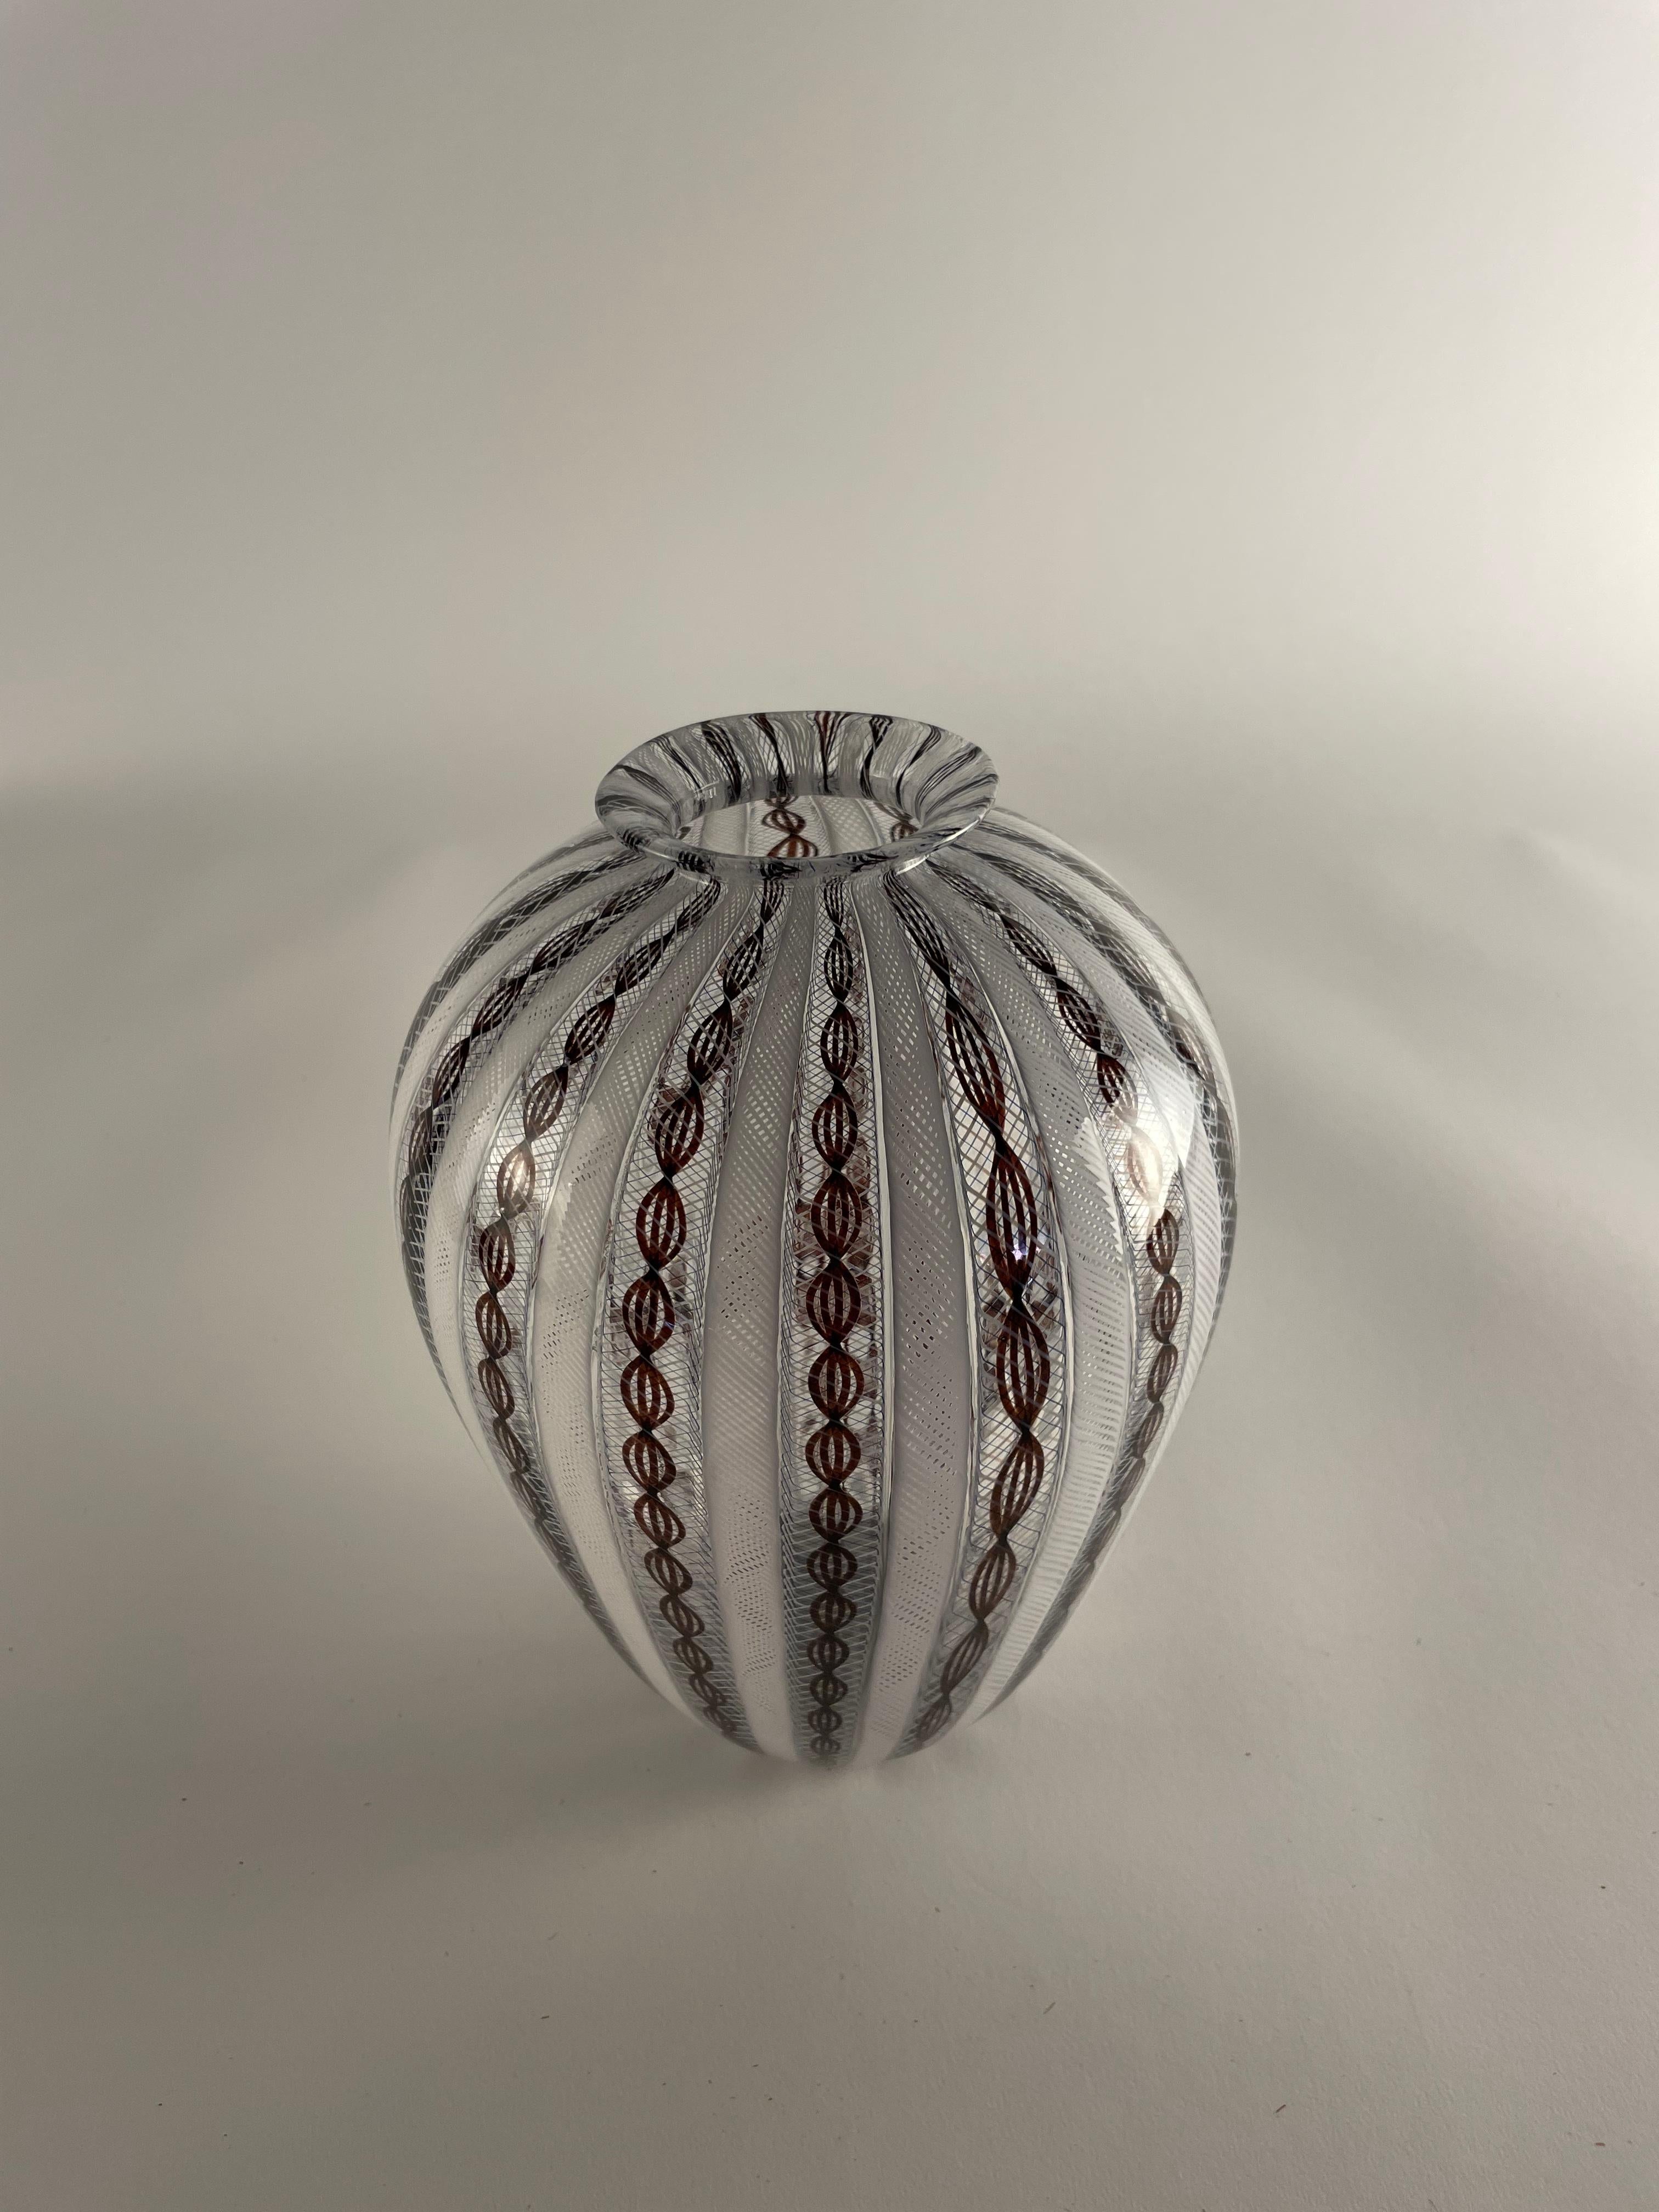 Voici ZANFIRICO, un chef-d'œuvre de l'artisanat du verre de Murano. Ce vase exquis présente l'art du canne zanfirico, une technique complexe qui entrelace plusieurs fils de verre pour créer un motif hypnotique semblable à de la dentelle. Seuls les